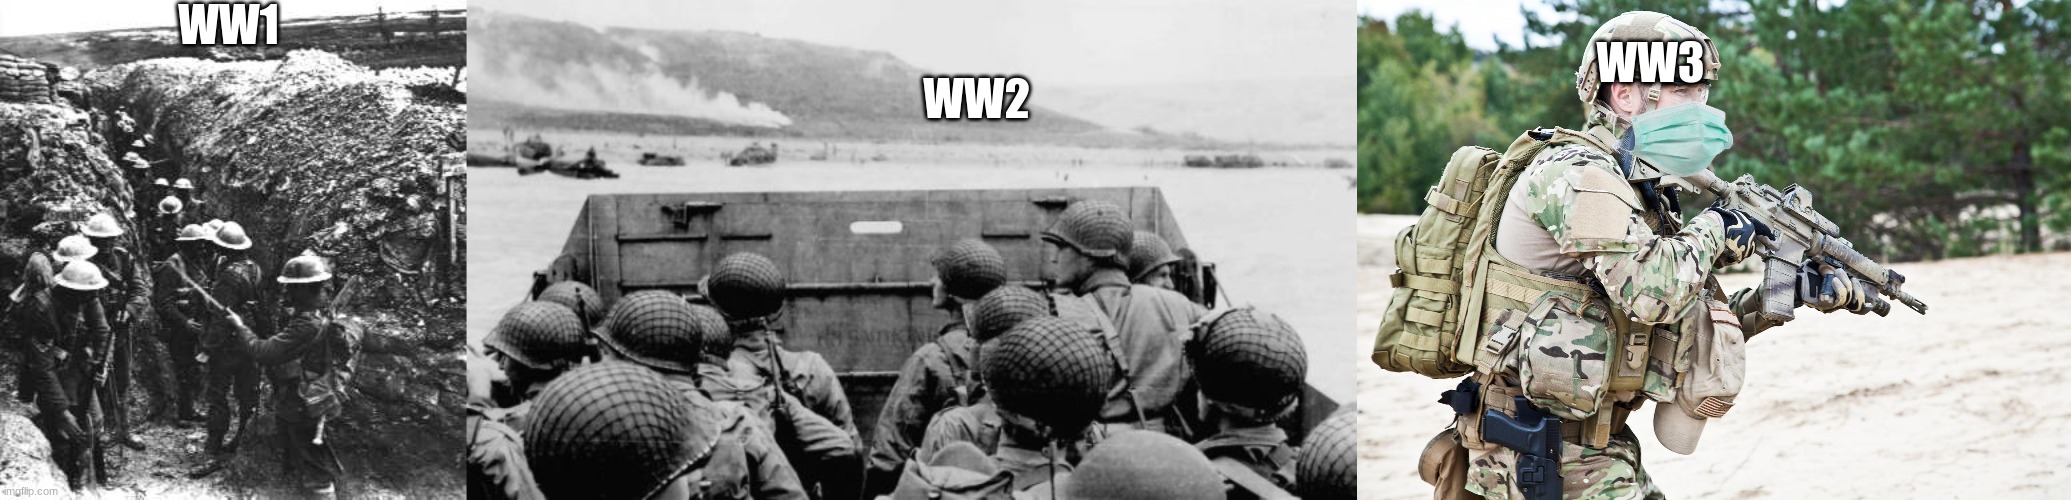 the wars | WW1; WW2; WW3 | image tagged in ww1,ww2 | made w/ Imgflip meme maker